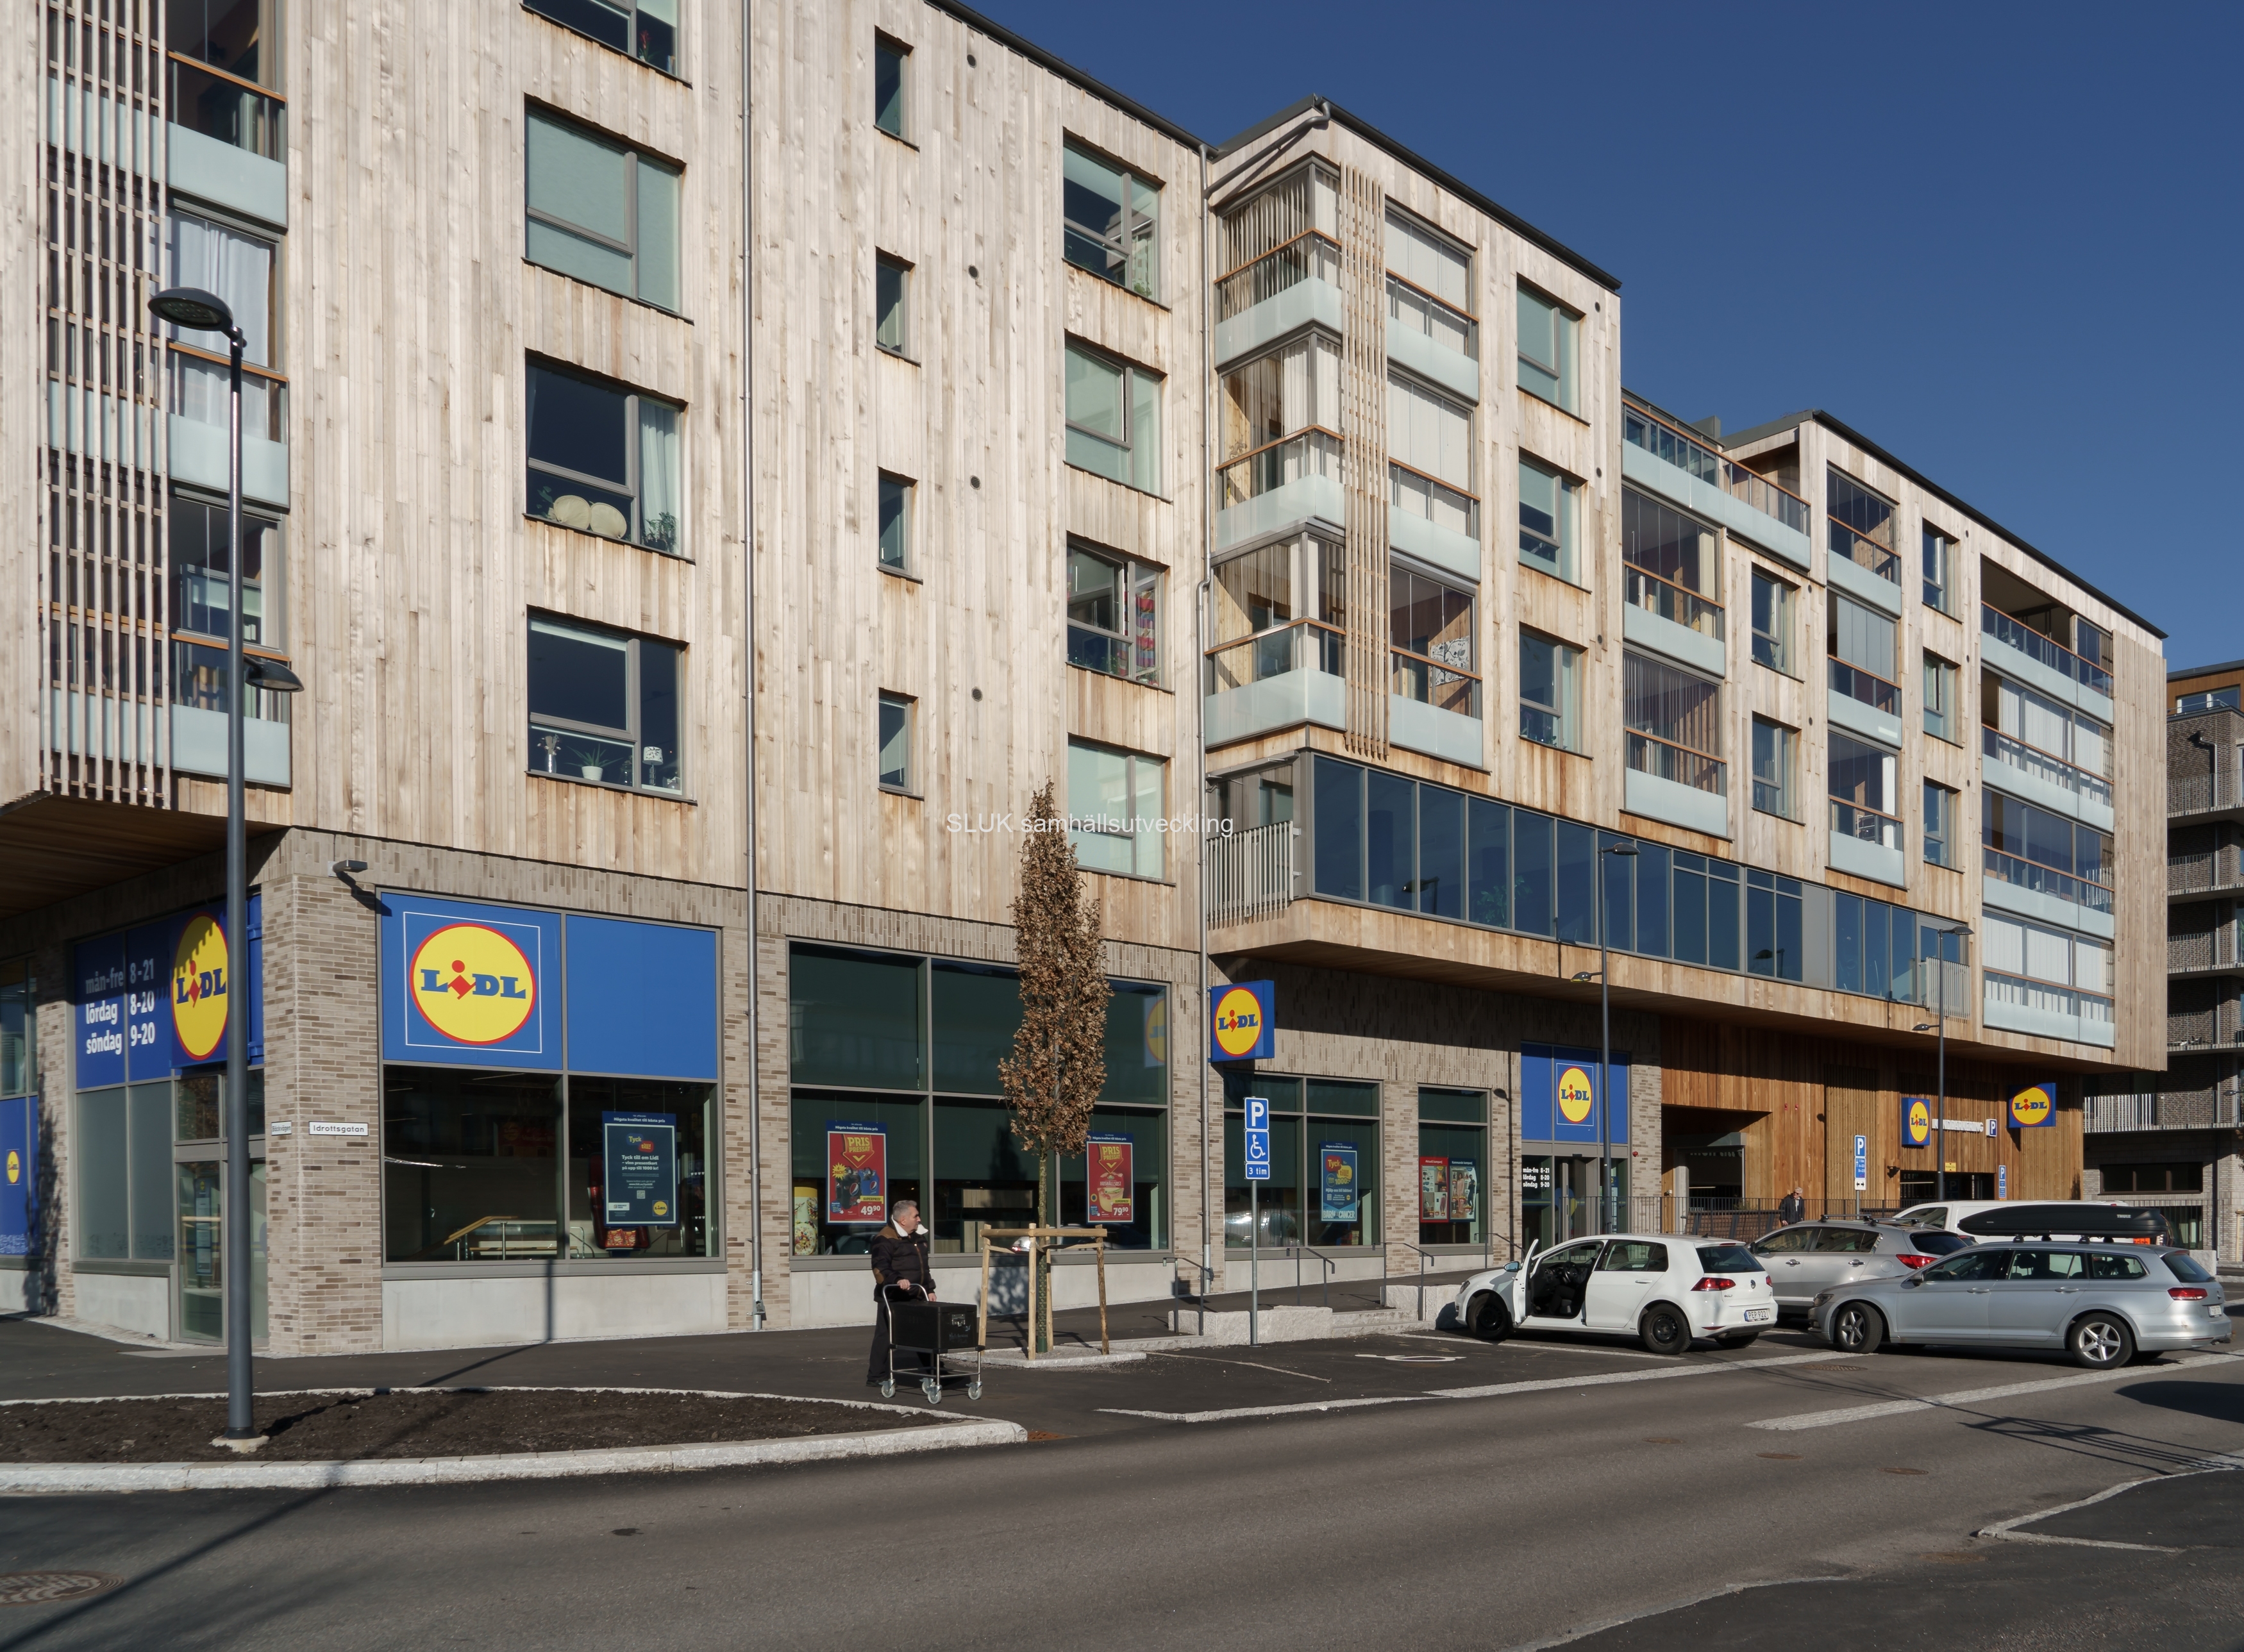 I Mölnlycke centrum är sedan länge bontop, seniorboende färdigbyggt och folk har flyttat in. Lidl har en stor butikpå bottenplan.